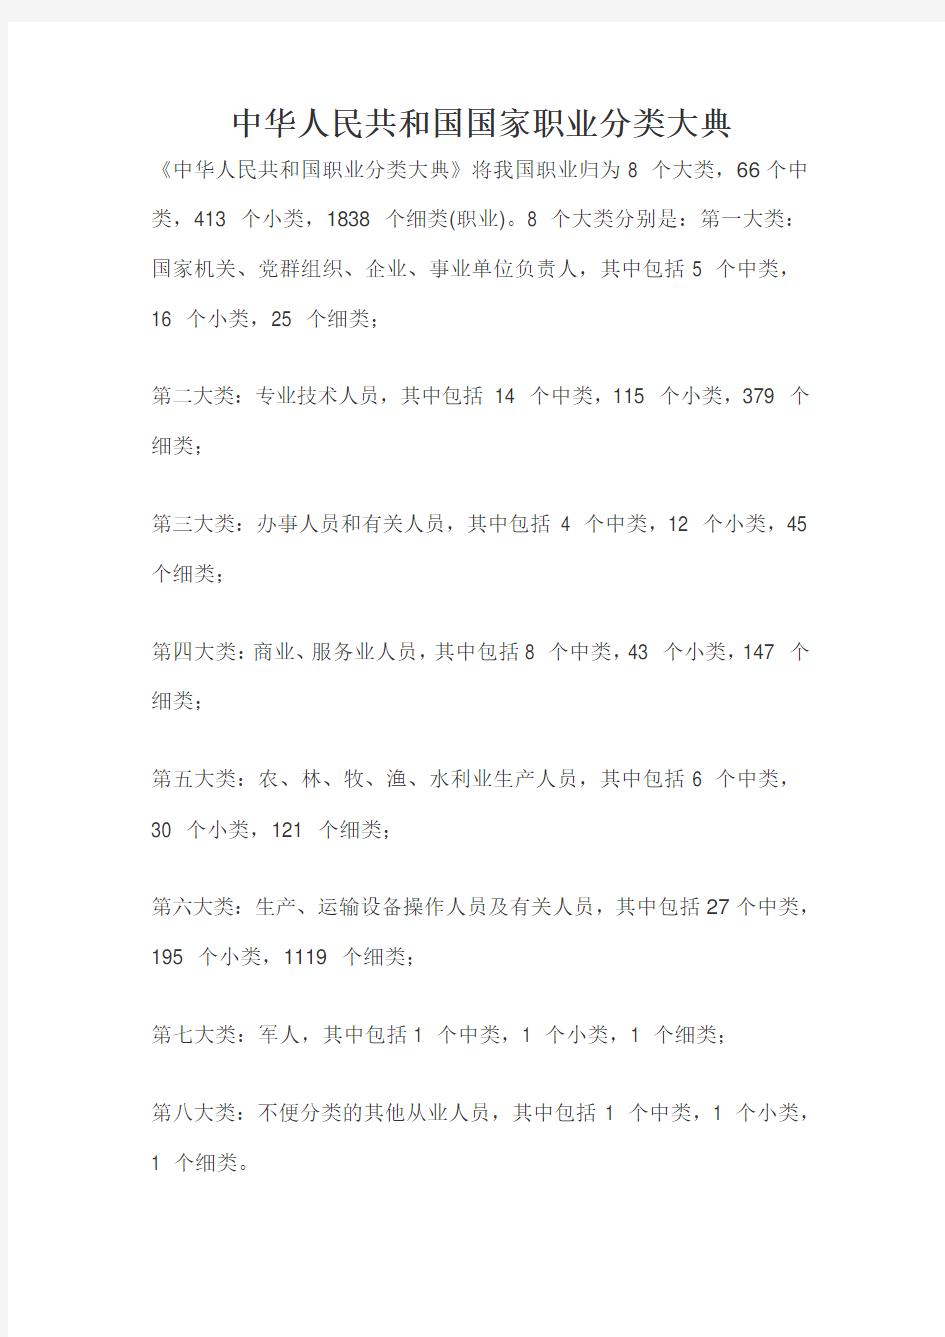 中华人民共和国国家职业分类大典1